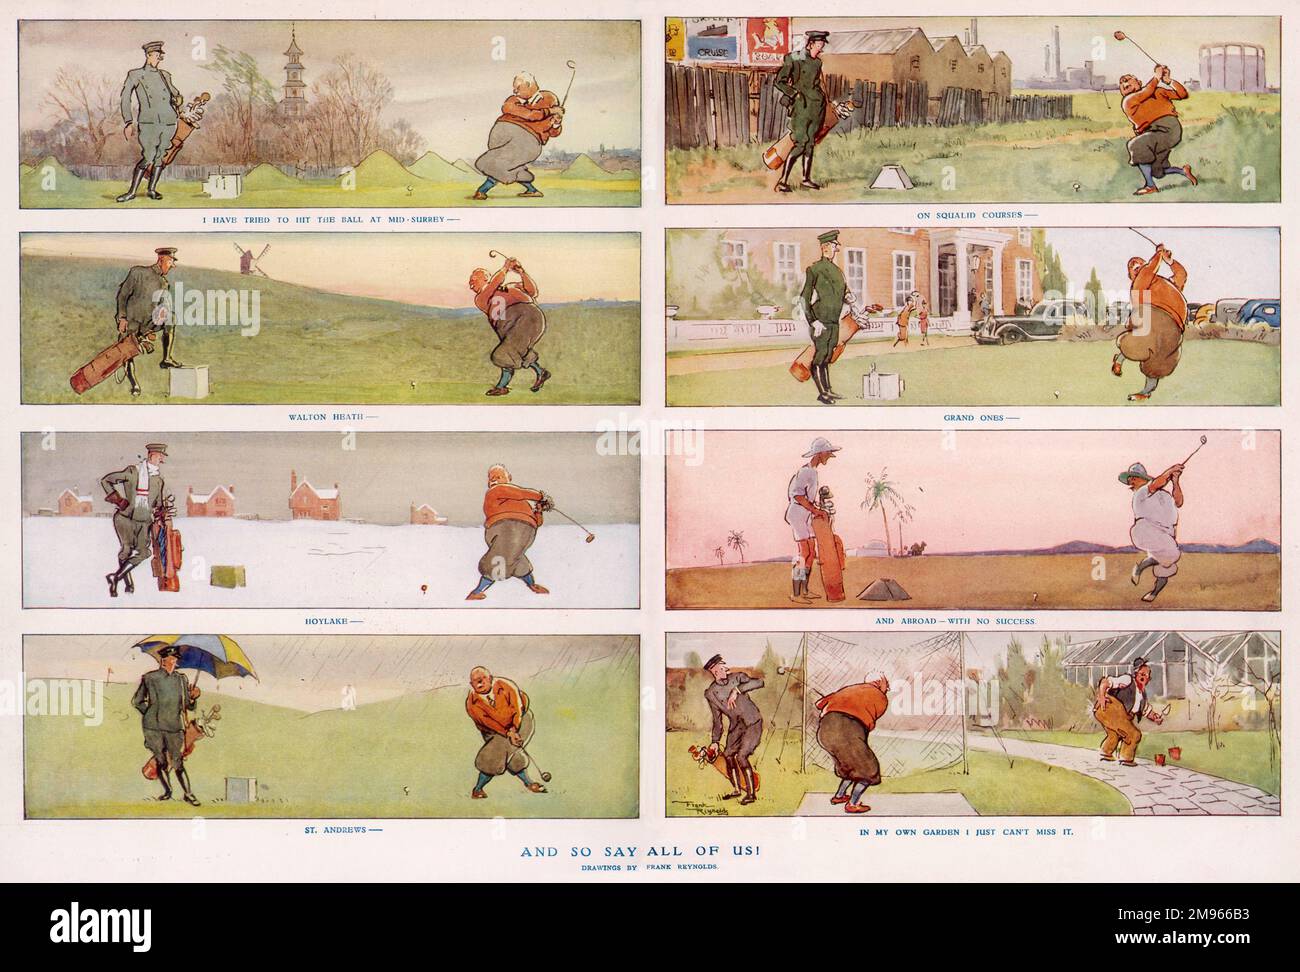 Un cartone animato sequenziale che mostra un paziente accompagnamento caddy un golfer tenacious mentre affronta un'ampia varietà di randelli e verdi. Foto Stock